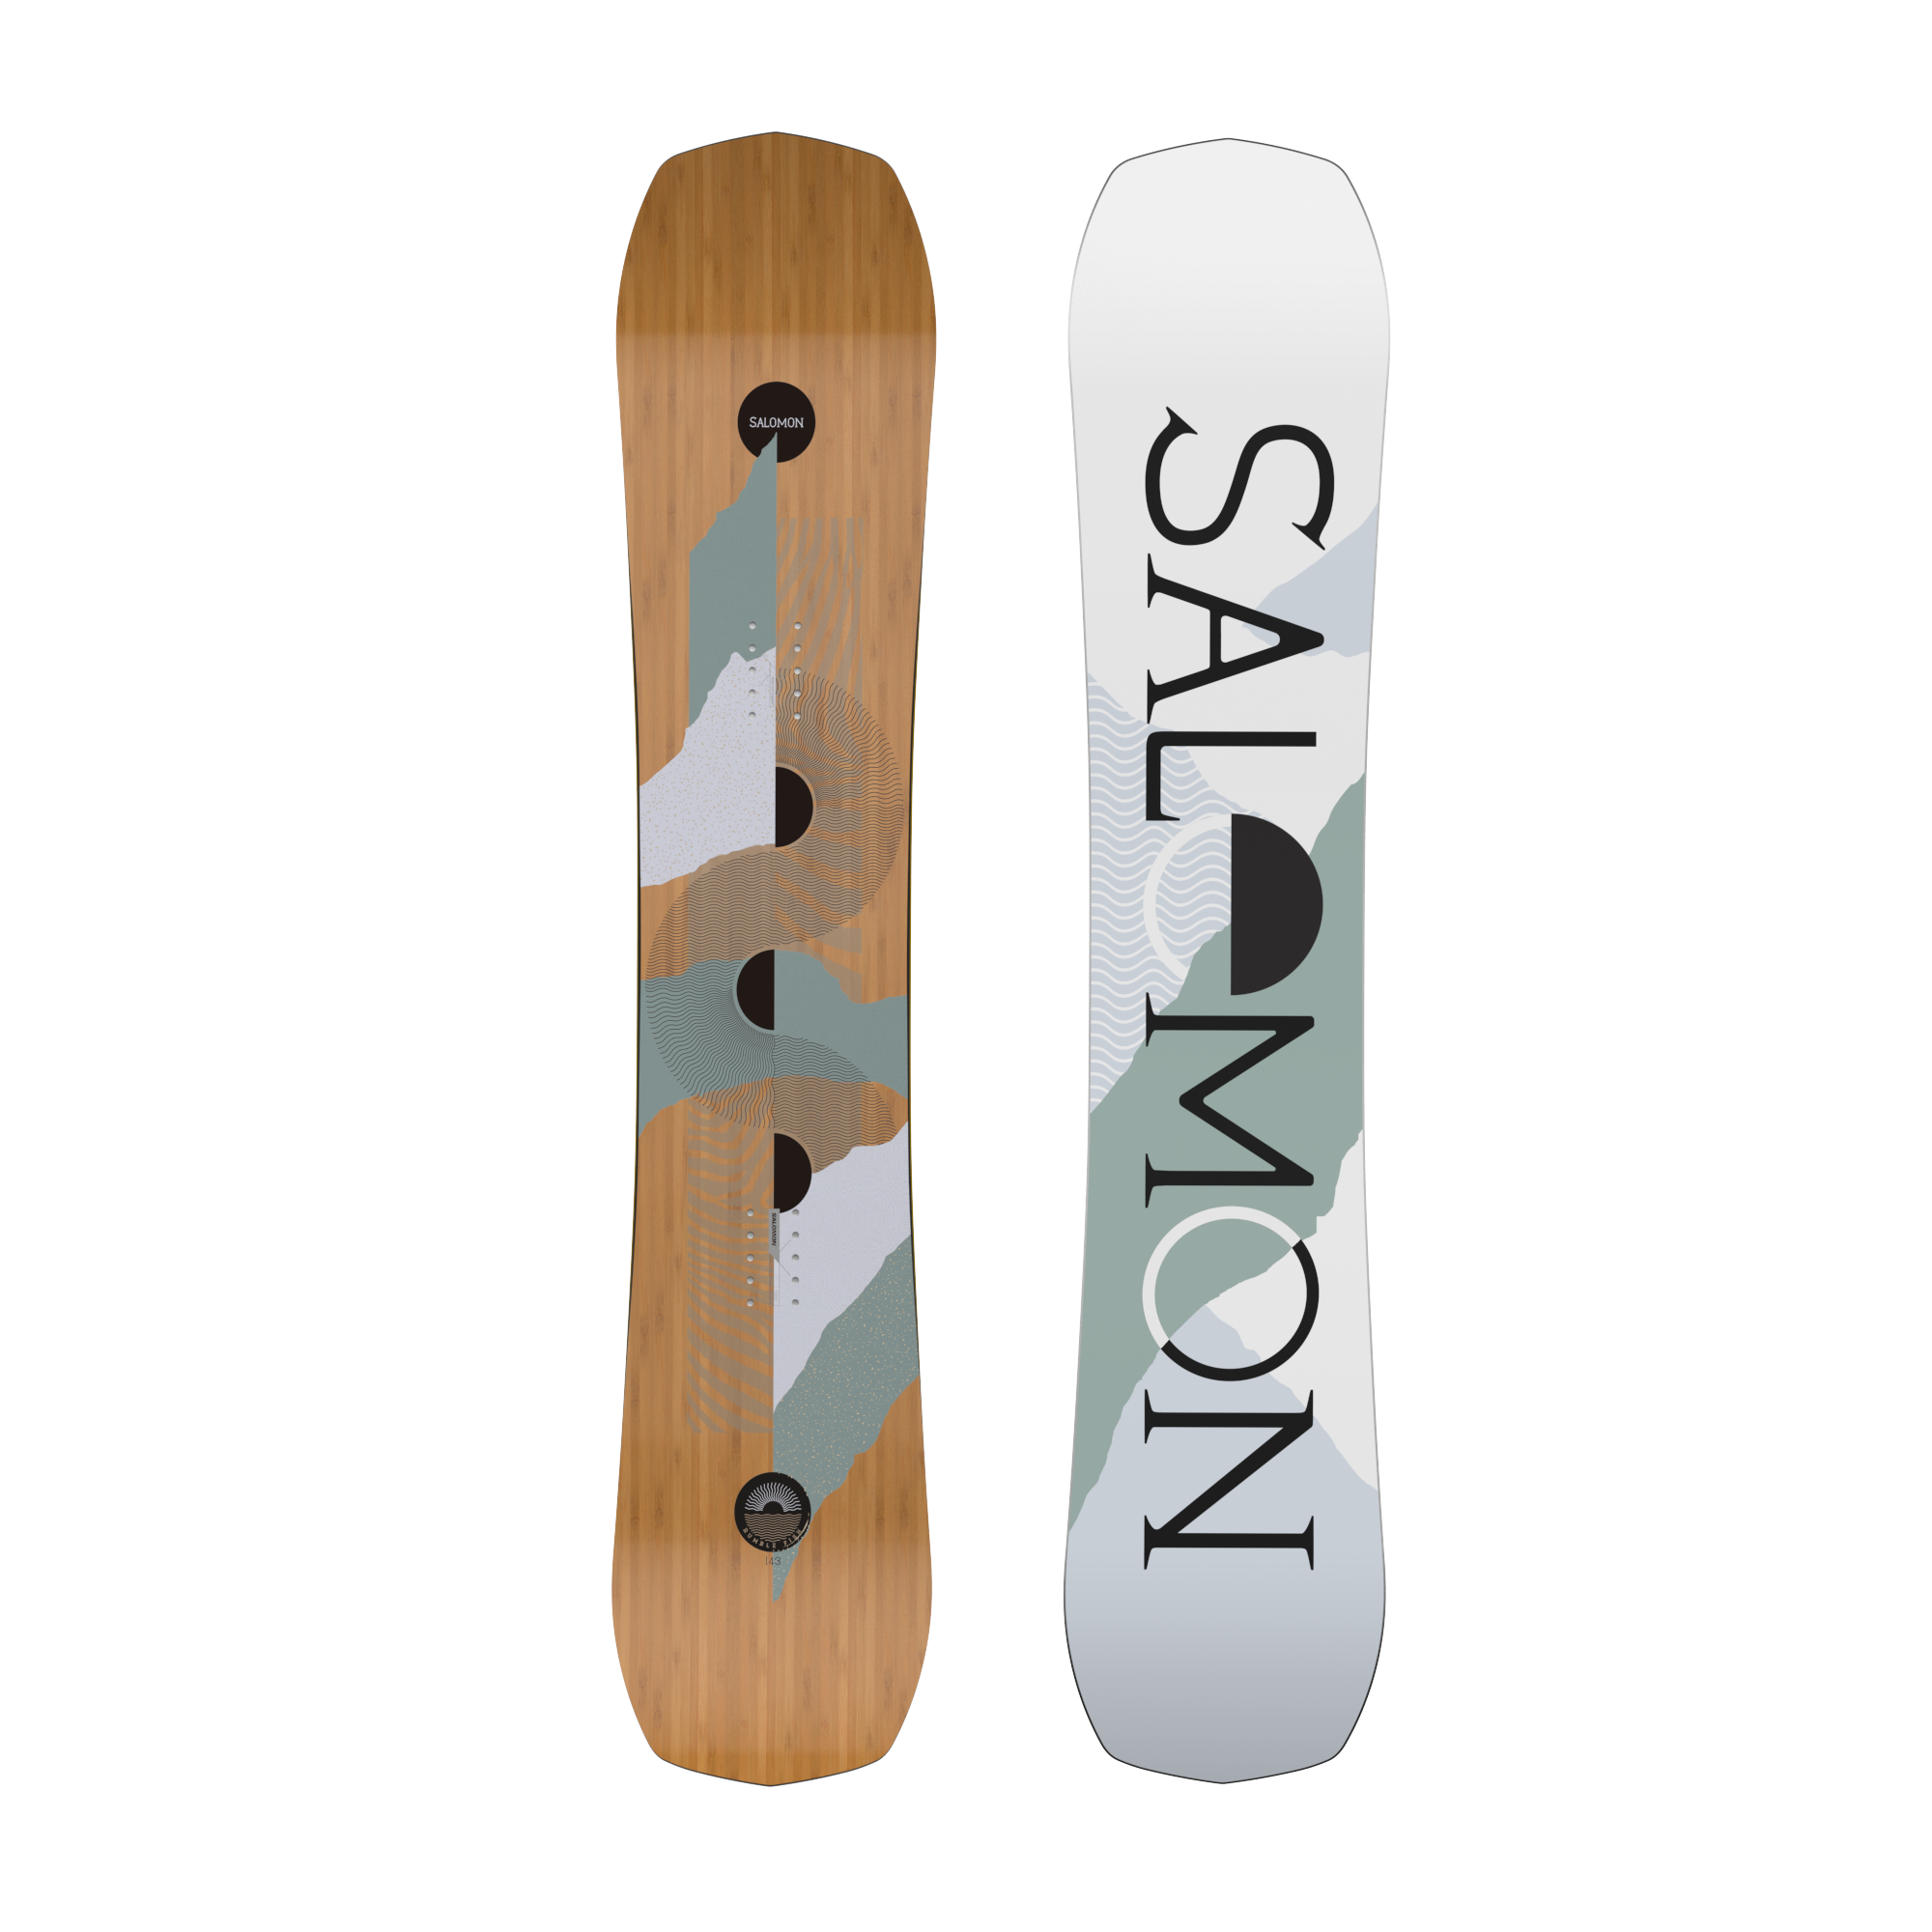 スノーボード 板 サロモン サーフェス - スノーボード